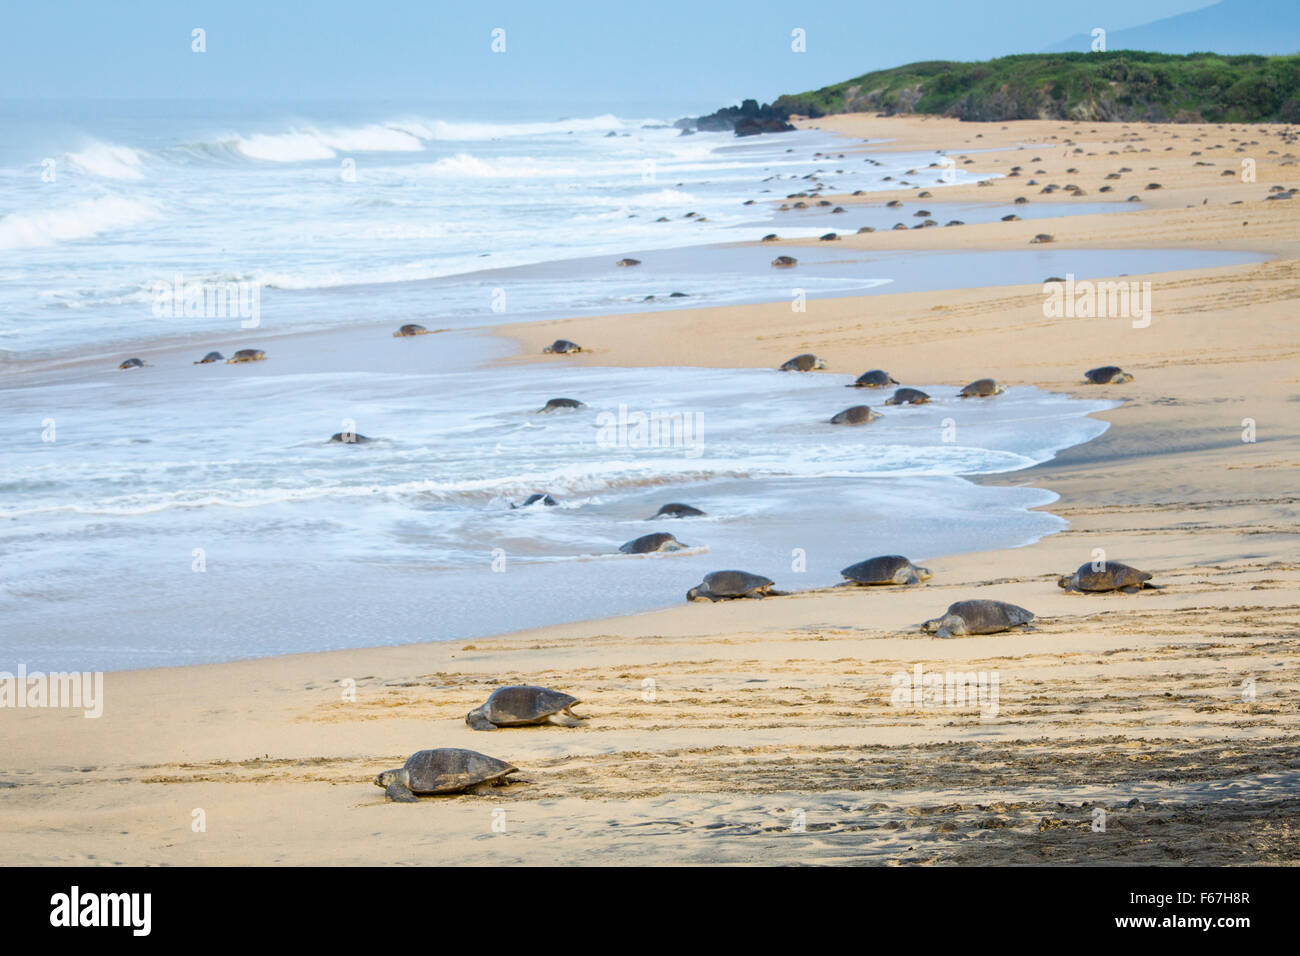 La piccola spiaggia di Ixtapilla, Michoacan, Messico, si riempie di centinaia di tartarughe marine Olive Ridley nidificanti durante le pause dell'alba. Foto Stock